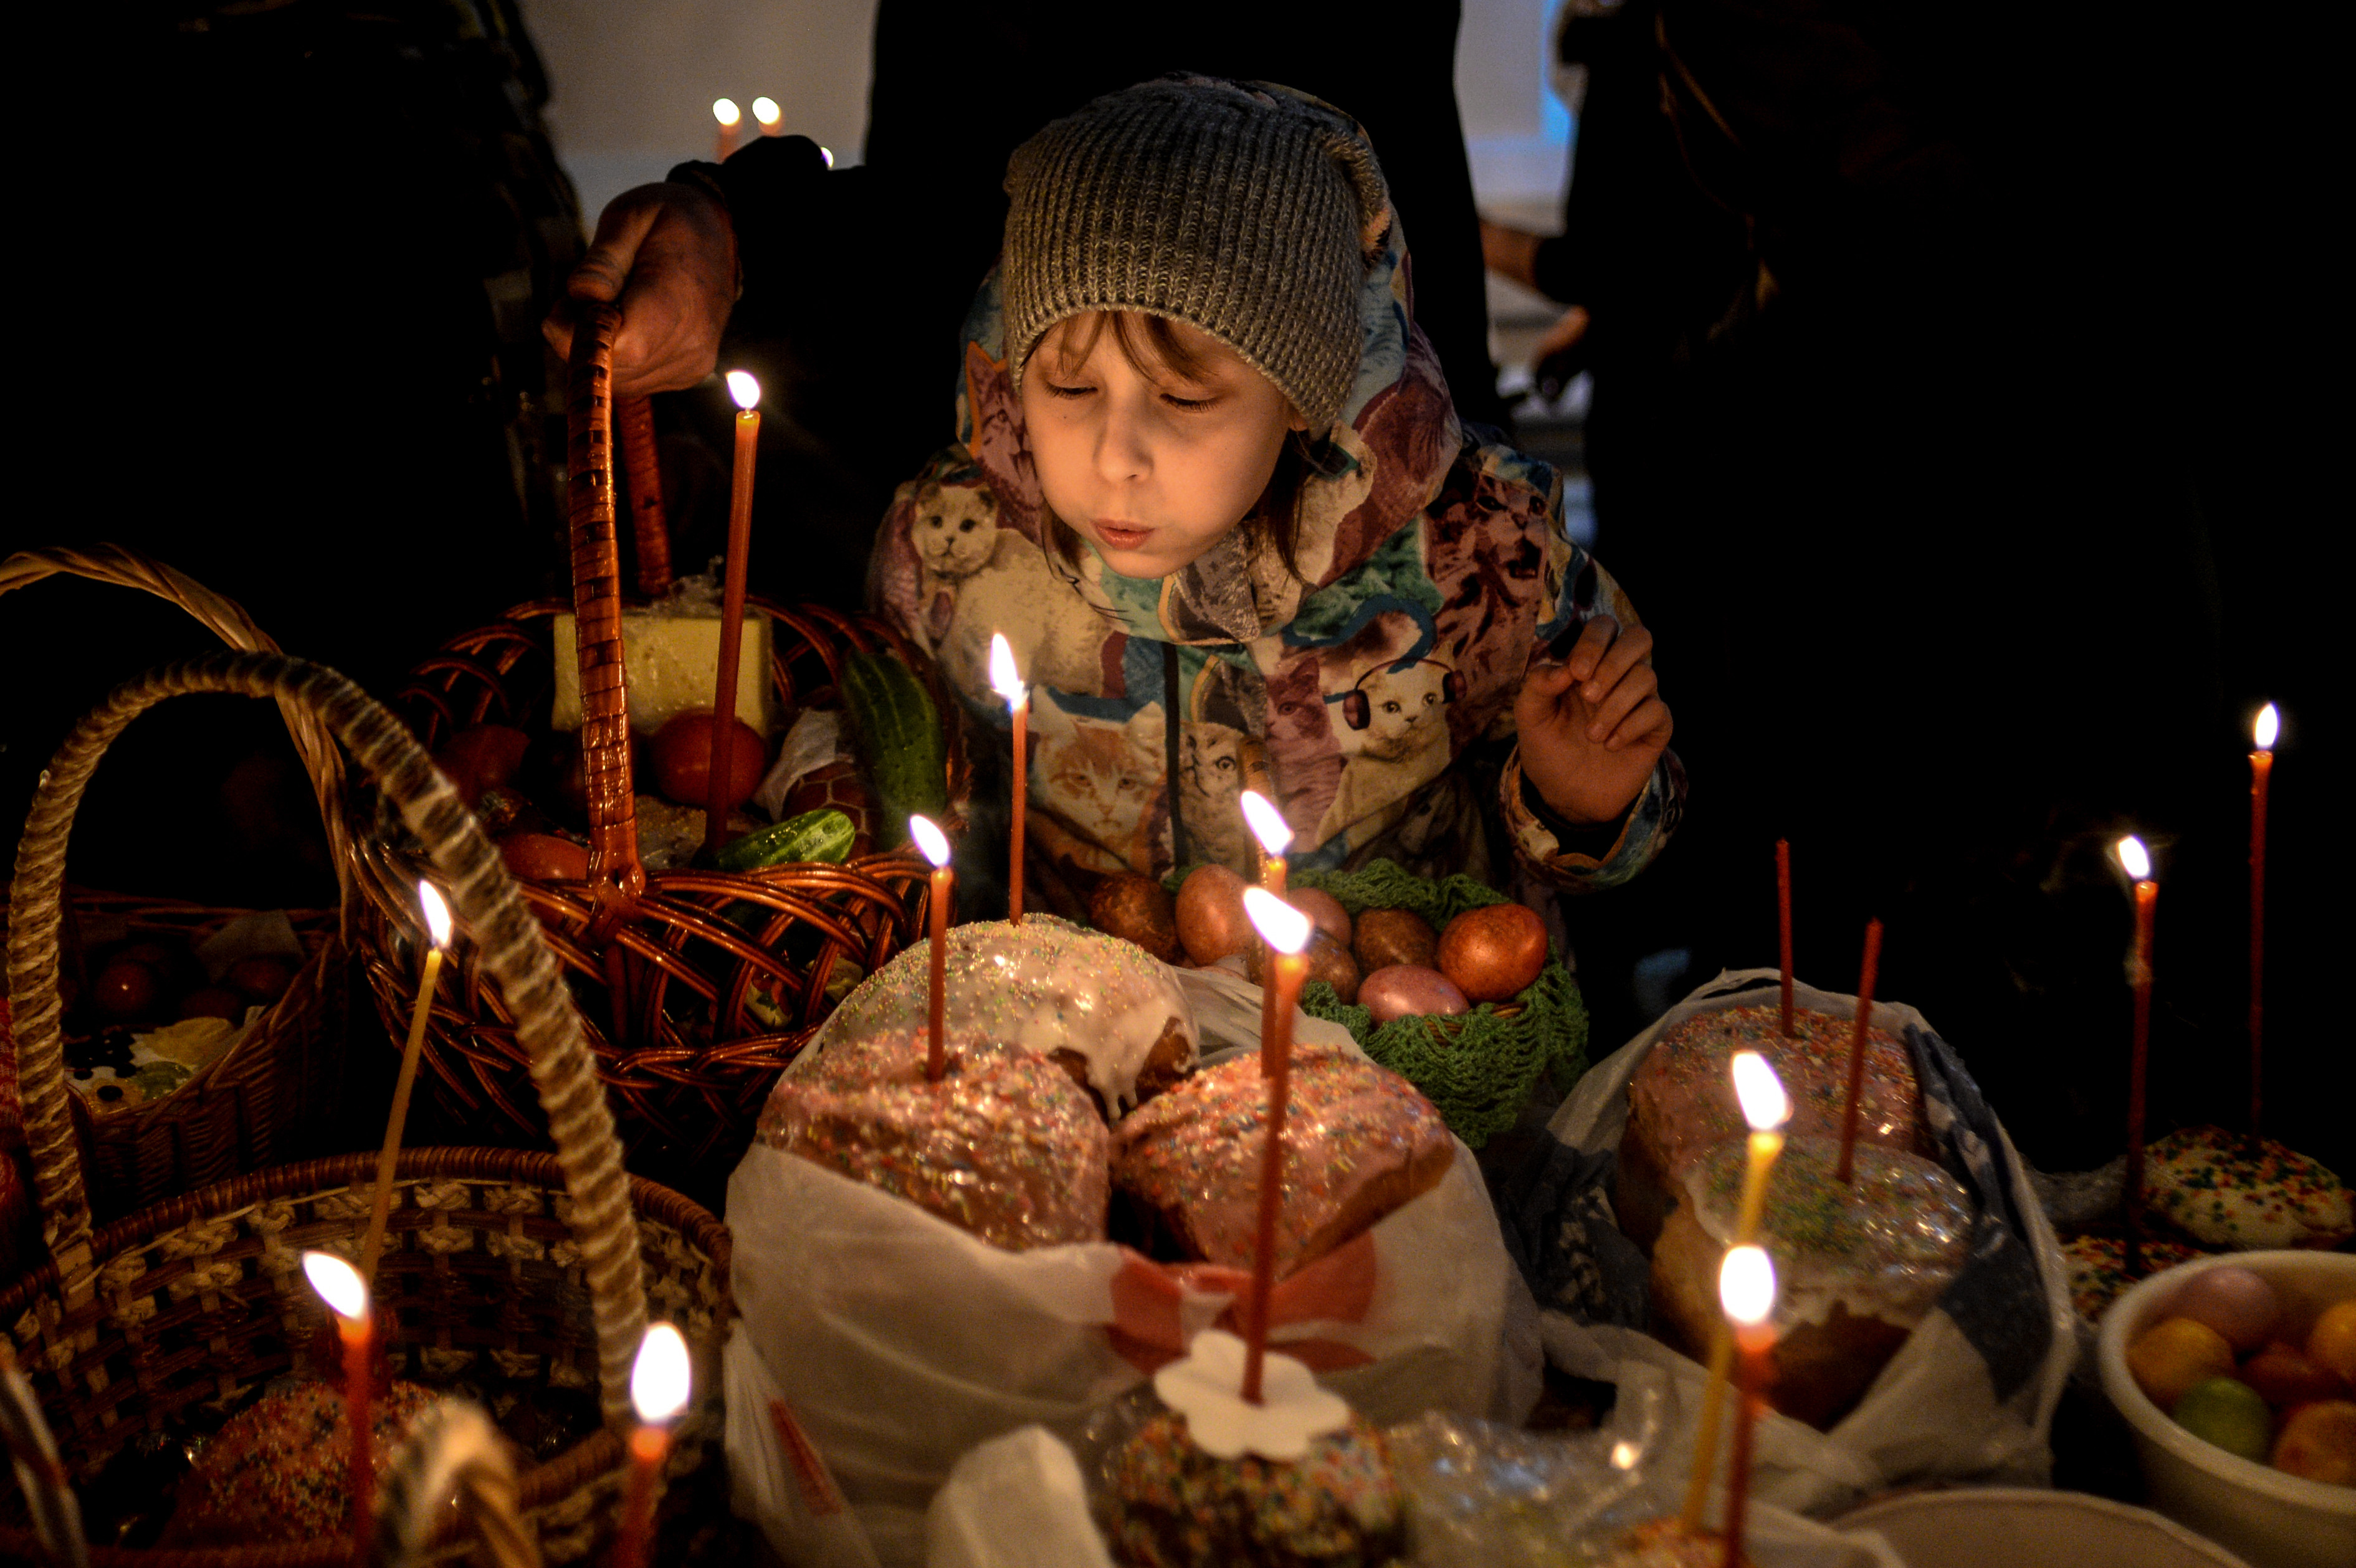 <p><span>Девочка задувает свечу во время пасхальной службы в Варлаамо-Хутынском Спасо-Преображенском женском монастыре.&nbsp;</span></p>
<p><span>Фото: &copy; РИА Новости/</span><span>&nbsp;Константин Чалабов</span></p>